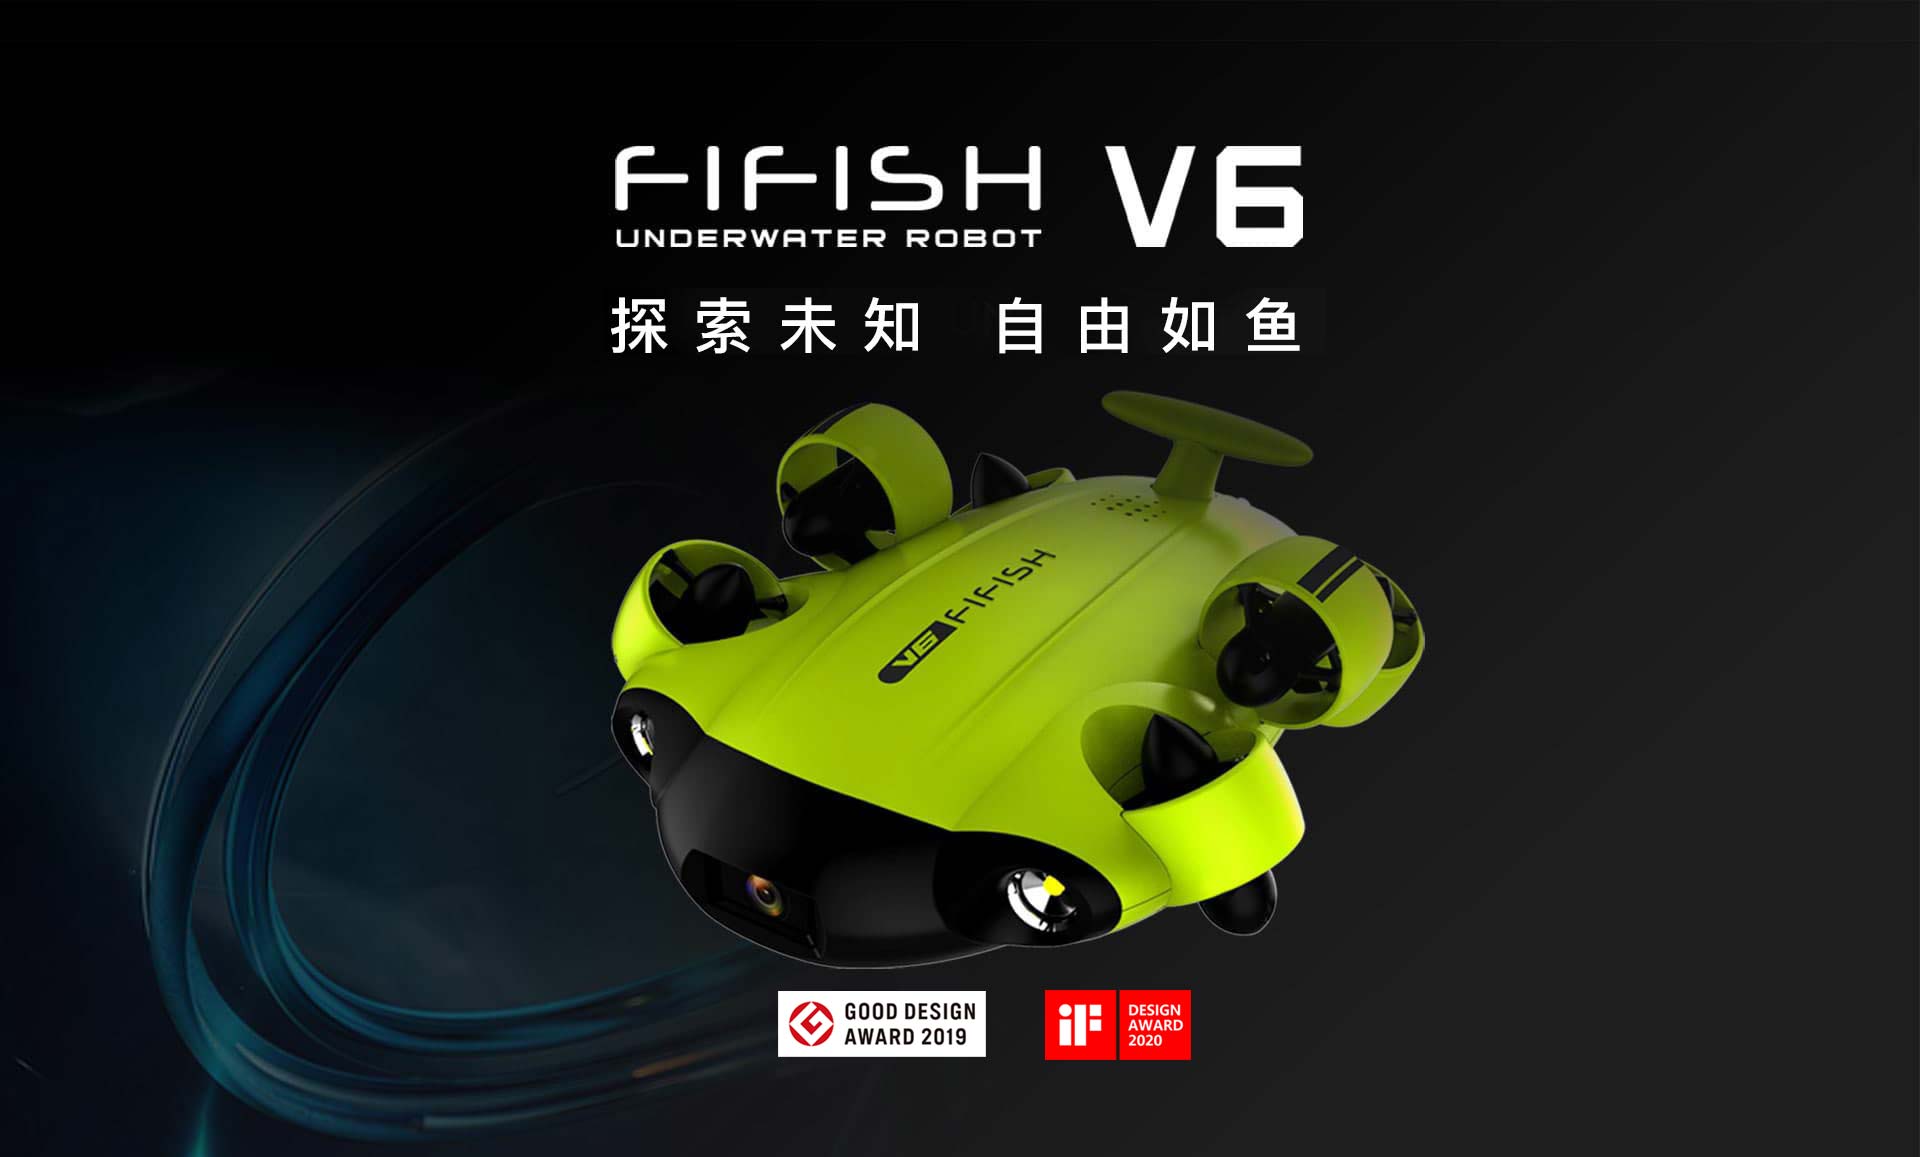 Fifish V6